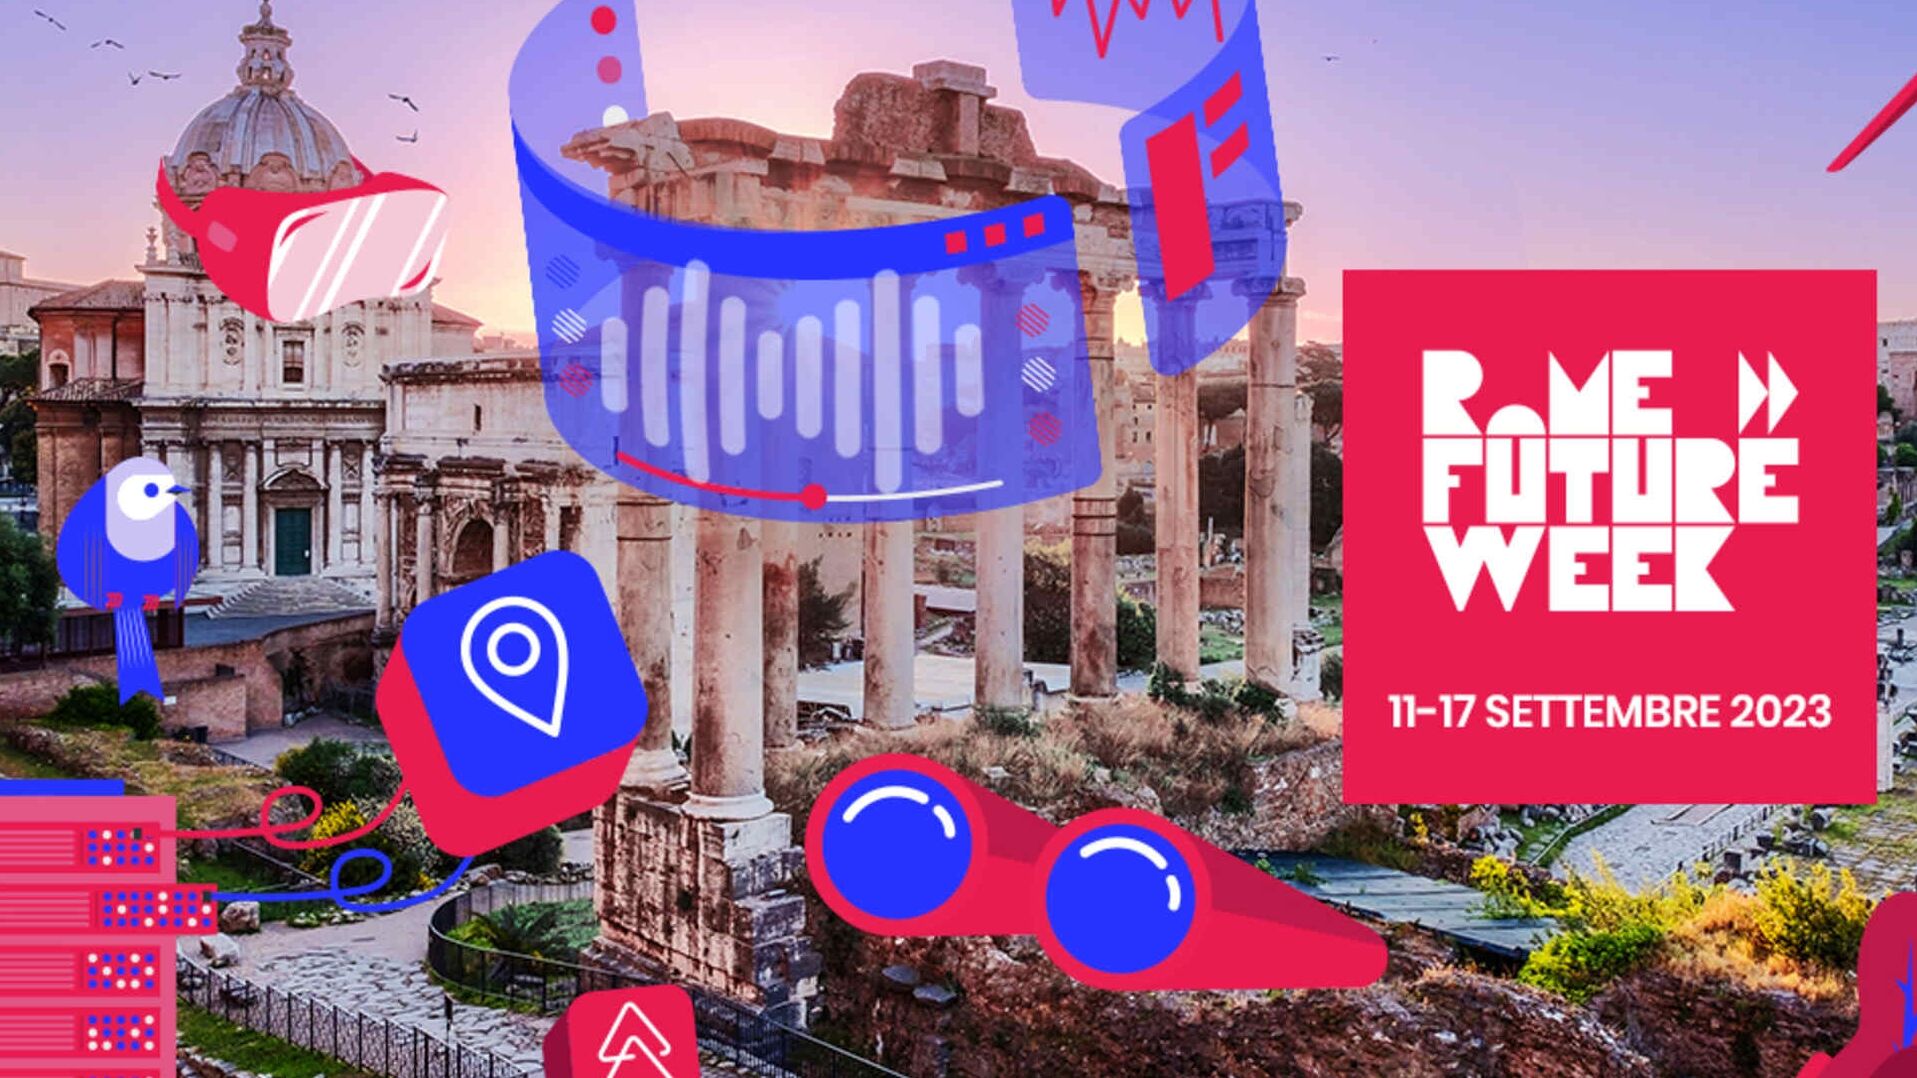 Rome Future Week: innovazione e tradizione a Roma dall’11 al 17 settembre 2023